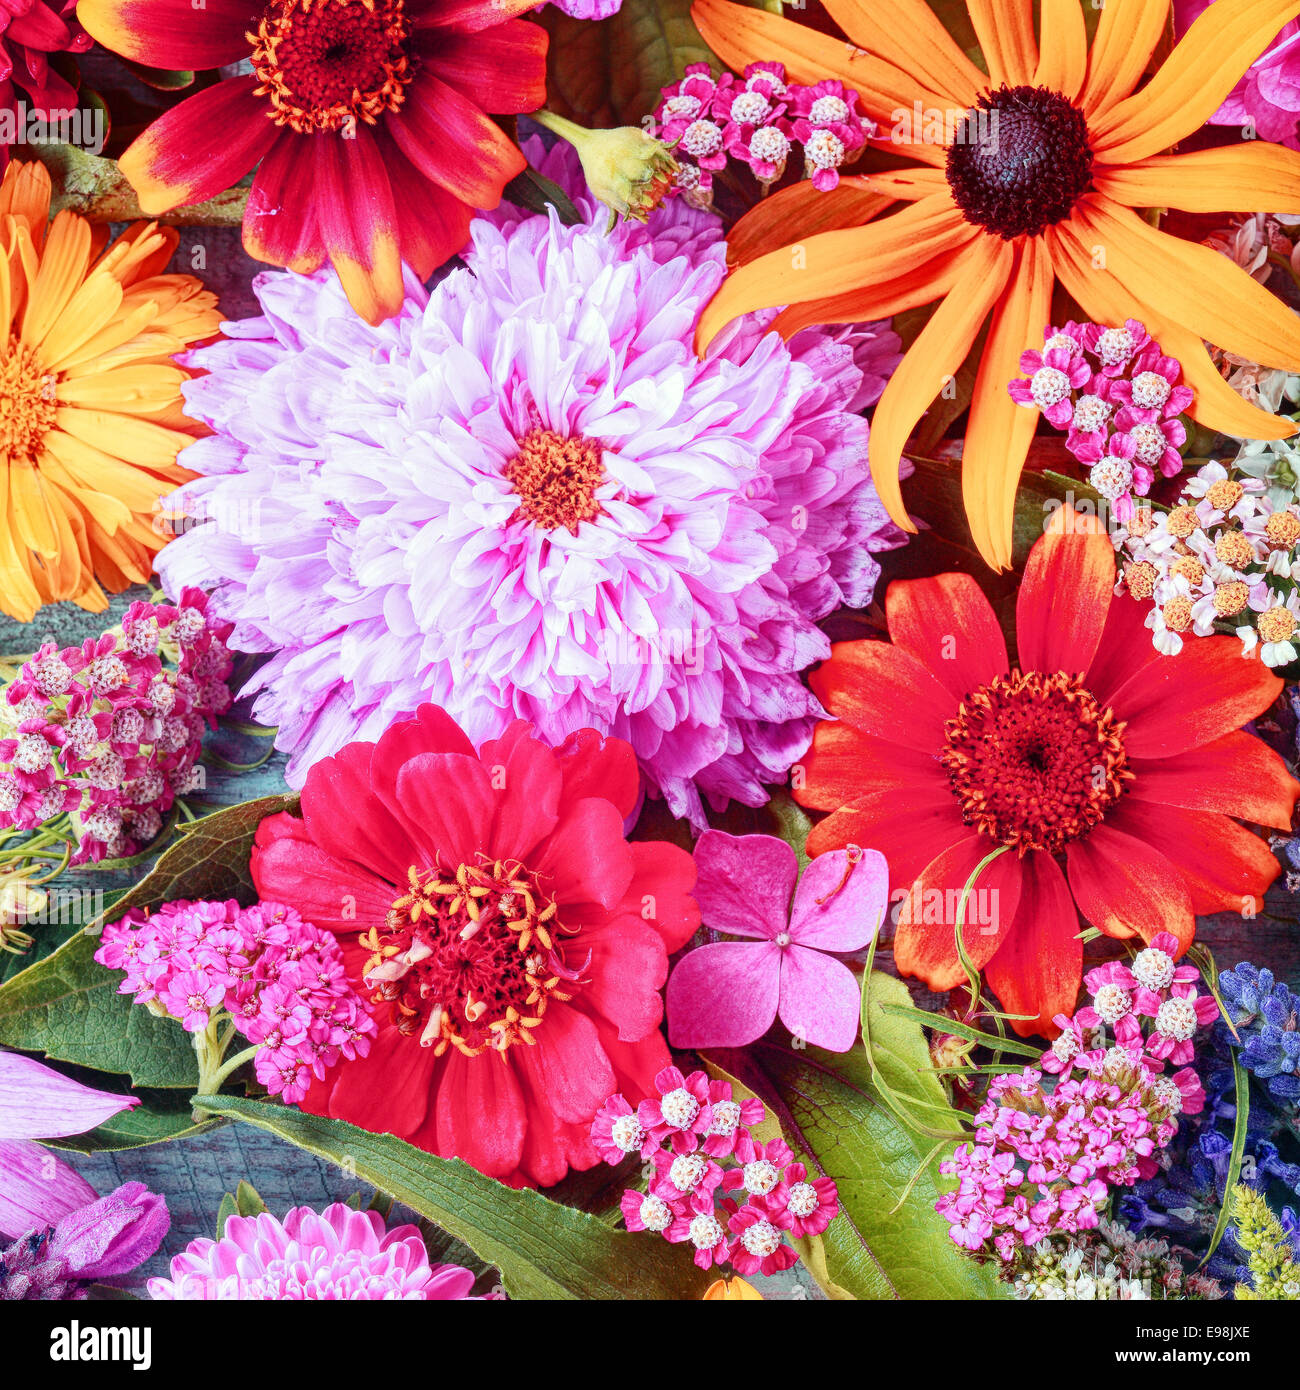 Été haut en couleurs avec un fond de fleurs serrées bouquet de fleurs variées y compris les dahlias et vive les Gerberas en format carré pour une occasion festive Banque D'Images